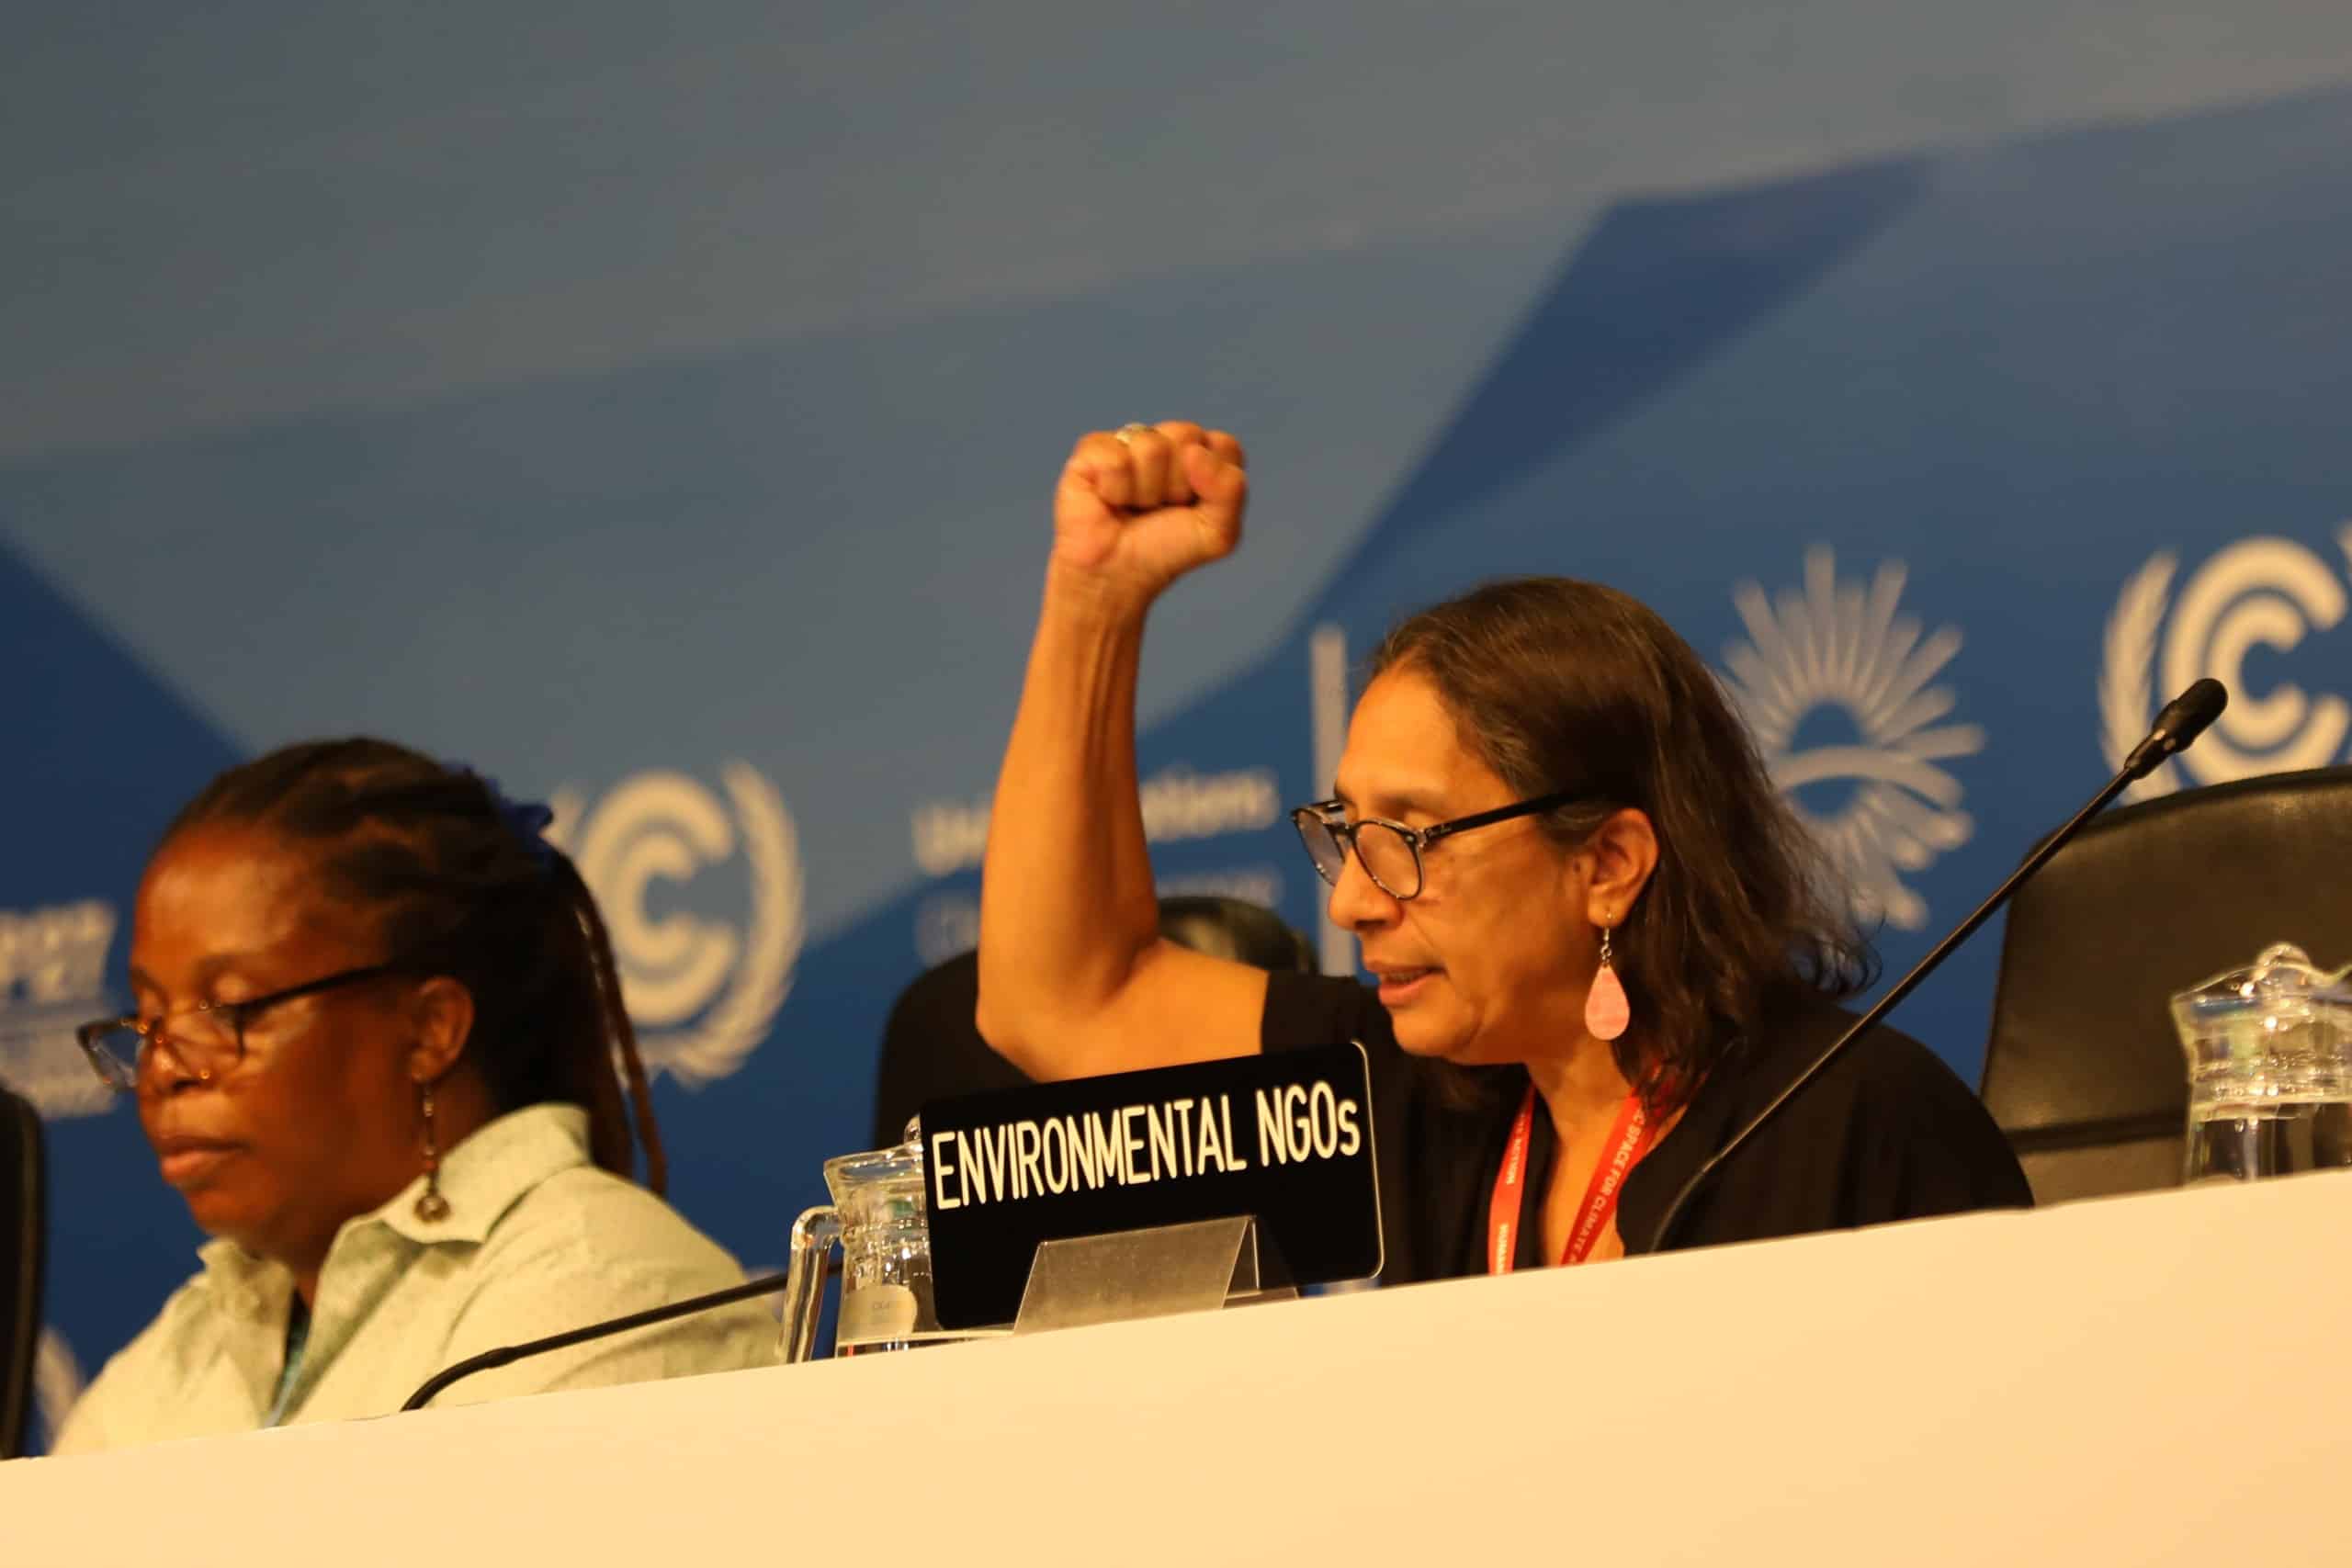 Umweltaktivismus während COP27. Bildquelle: UNFCCC via Flickr, CC BY-NC-SA 2.0